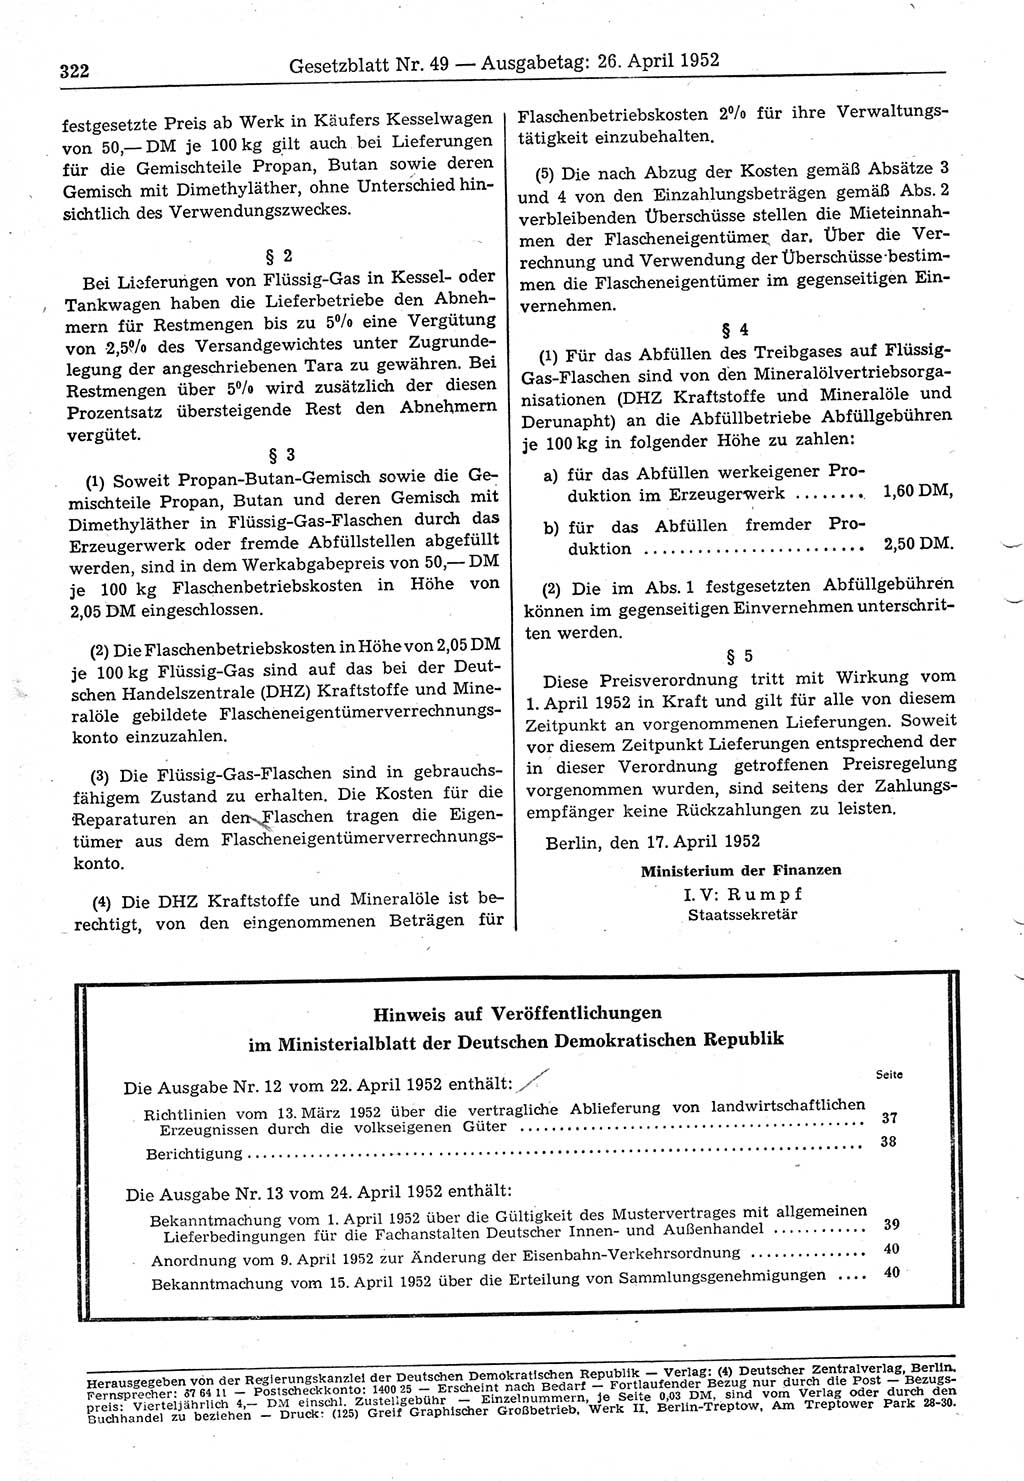 Gesetzblatt (GBl.) der Deutschen Demokratischen Republik (DDR) 1952, Seite 322 (GBl. DDR 1952, S. 322)